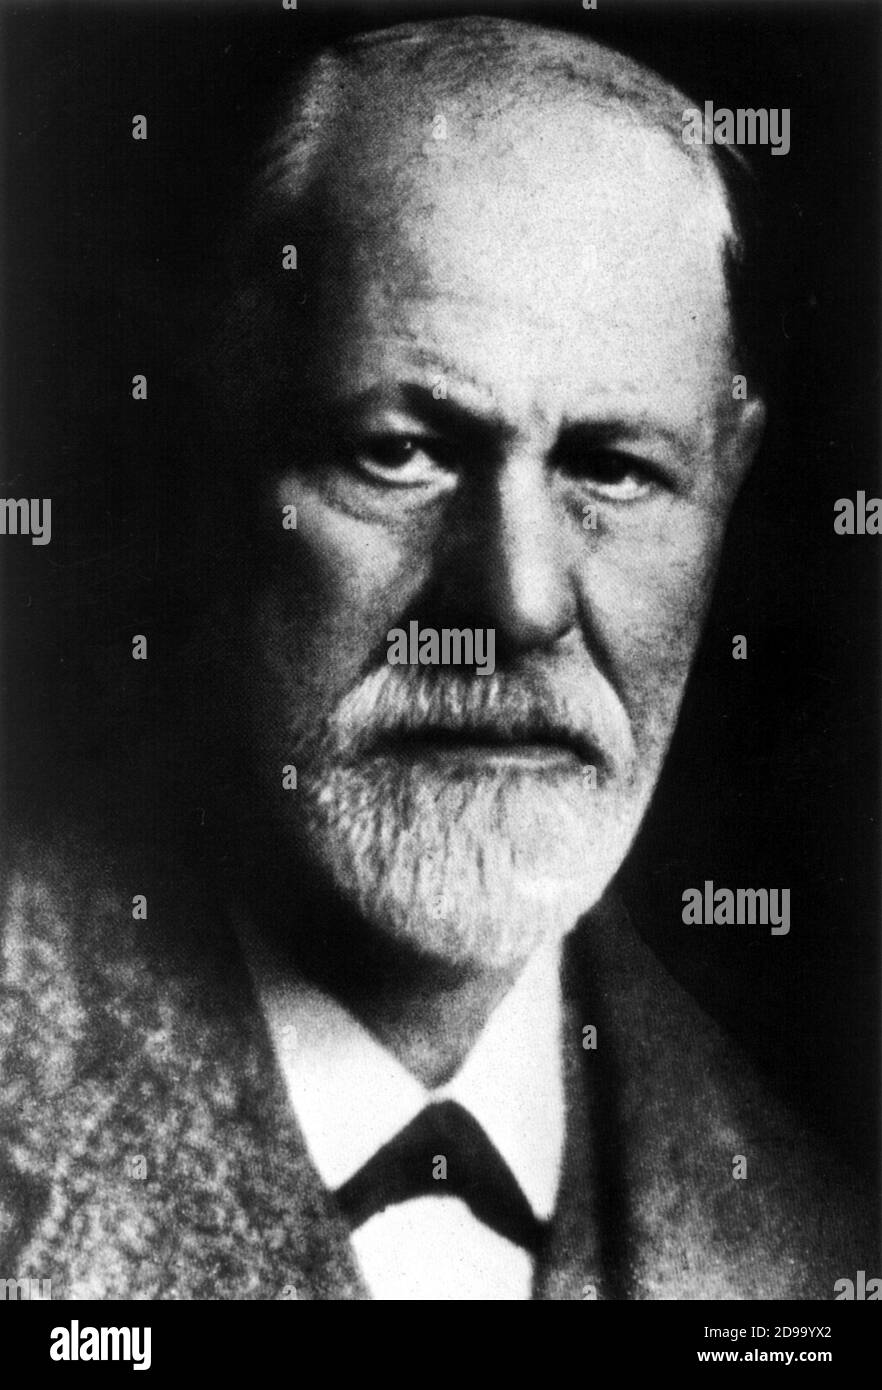 The austrian psychoanalyst  SIGMUND  FREUD  ( 1856 - 1939 ) - neuropsichiatra - neuropsichiatria - PSICANALISTA - PSYCANALYSIS - PSICHE - PSYCHE  - inconscio - unconscious - medico - medicina - doctor  - medicine - cervello - brain - barba - beard - colletto - collar  ----  Archivio GBB Stock Photo